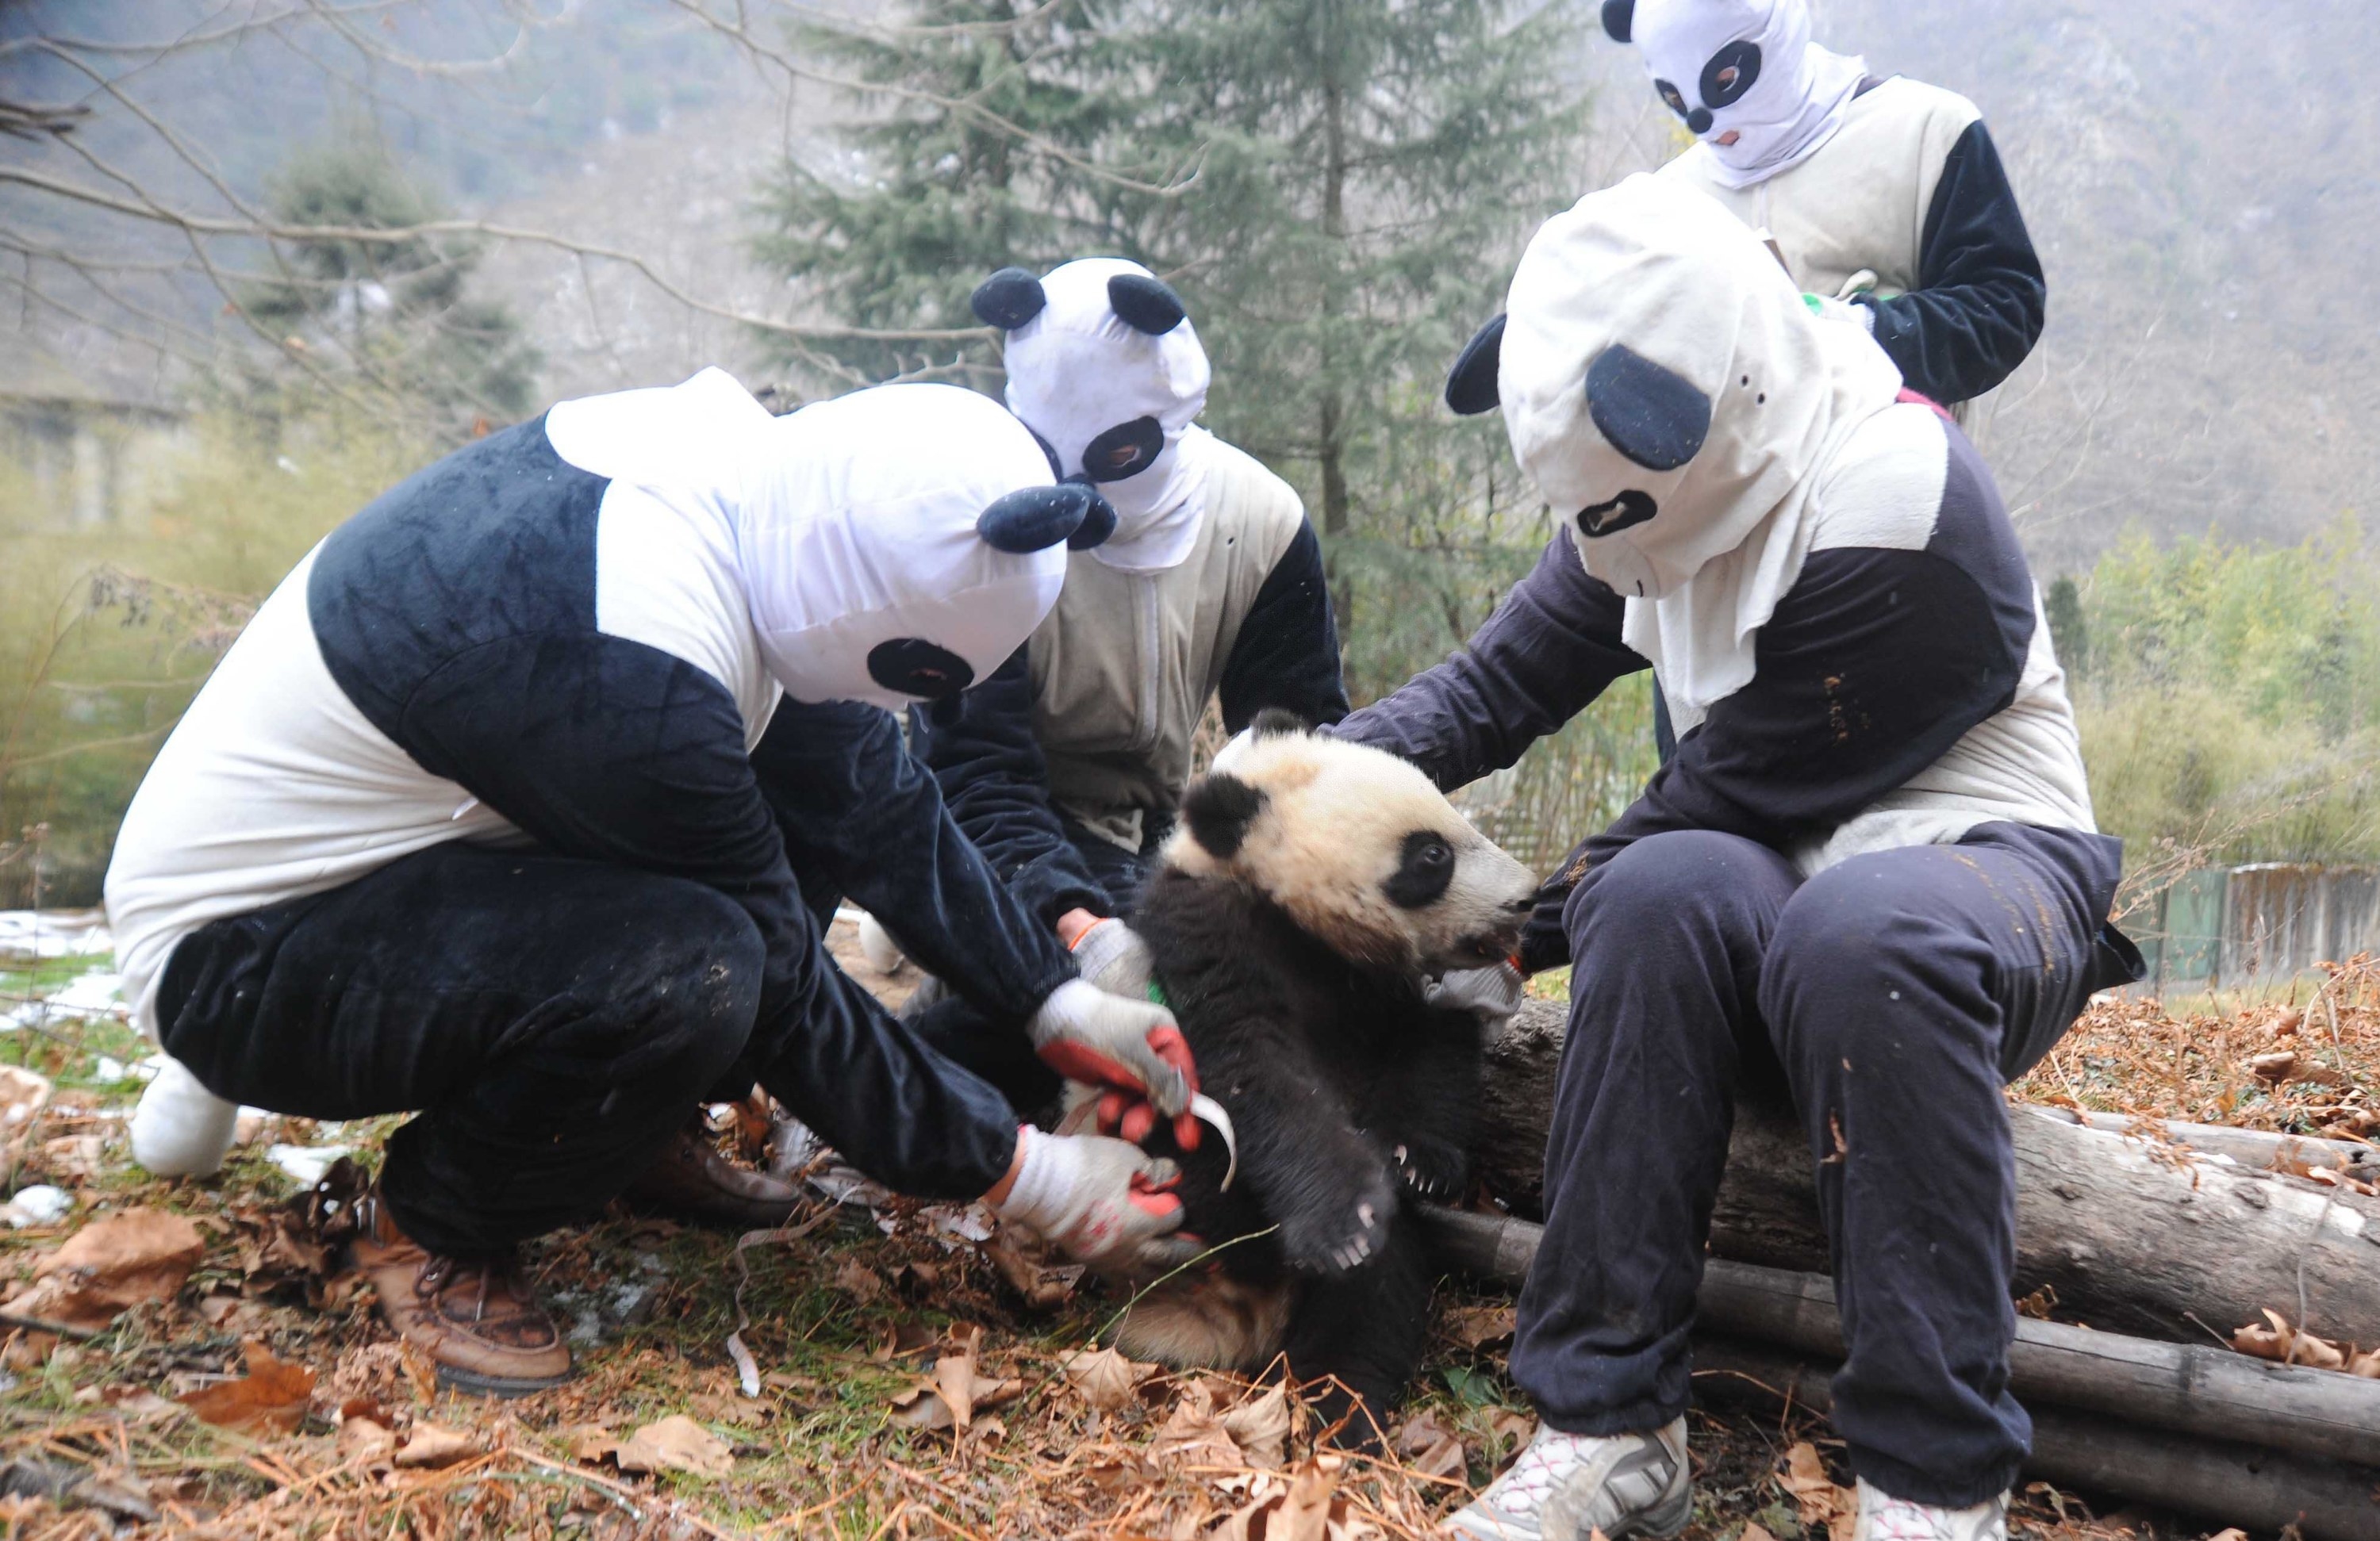 Caretakers in panda costumes sitting around a real panda cub